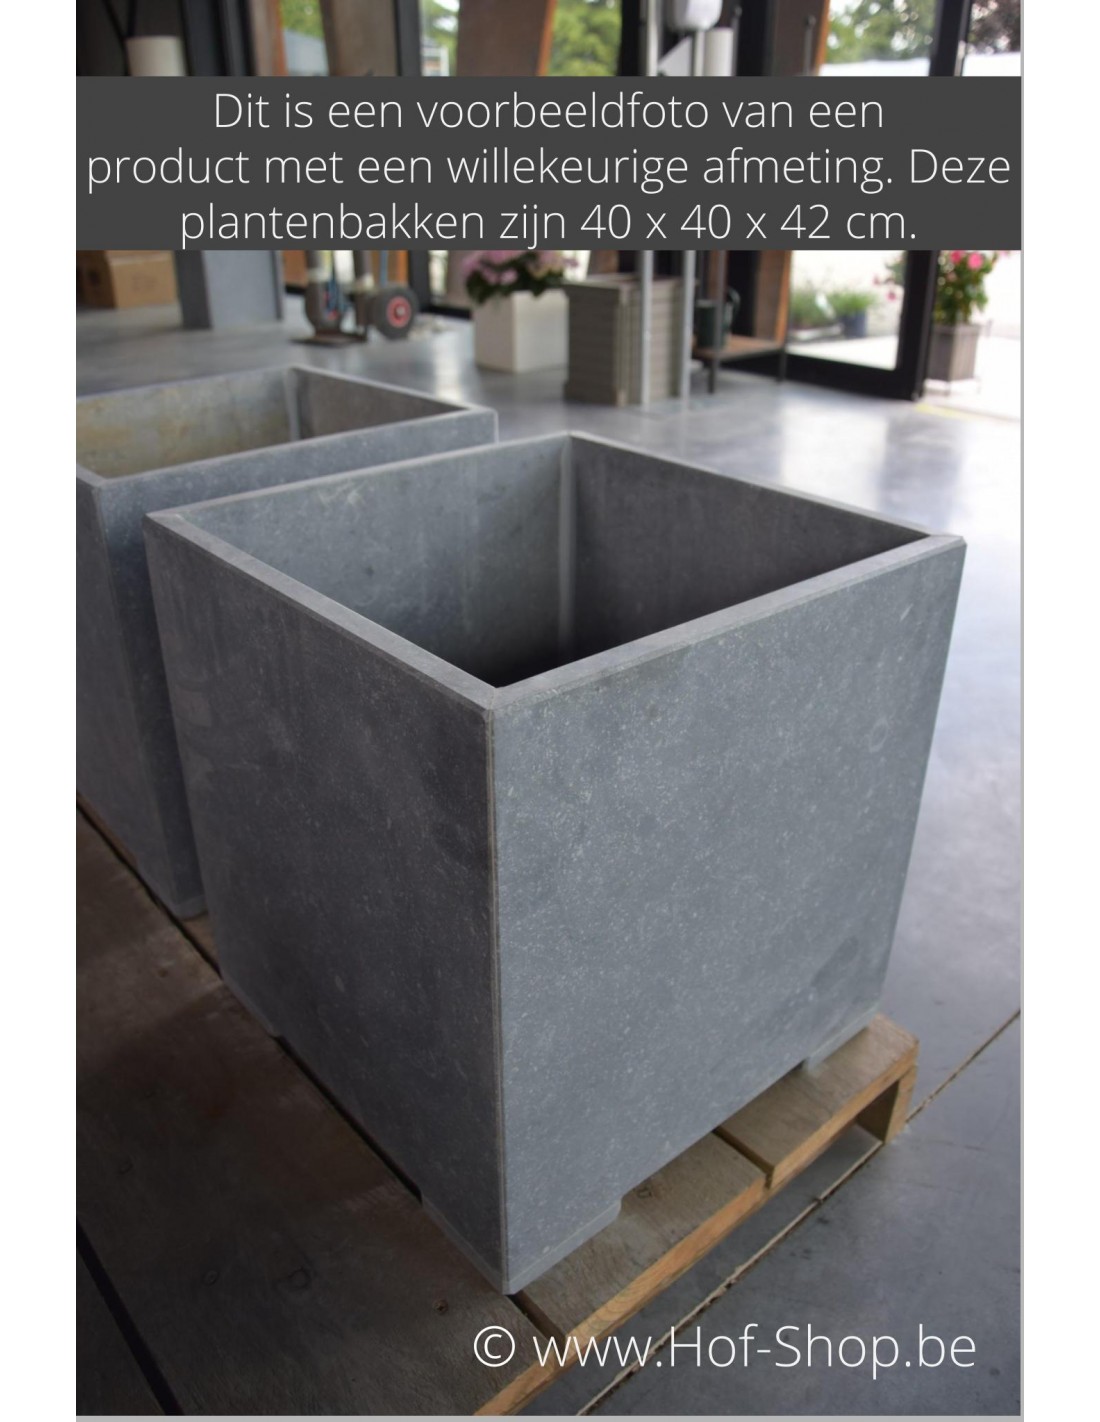 team adopteren mengsel Square Modern 30 x 30 x 32 cm - VASP Plantenbak in arduin